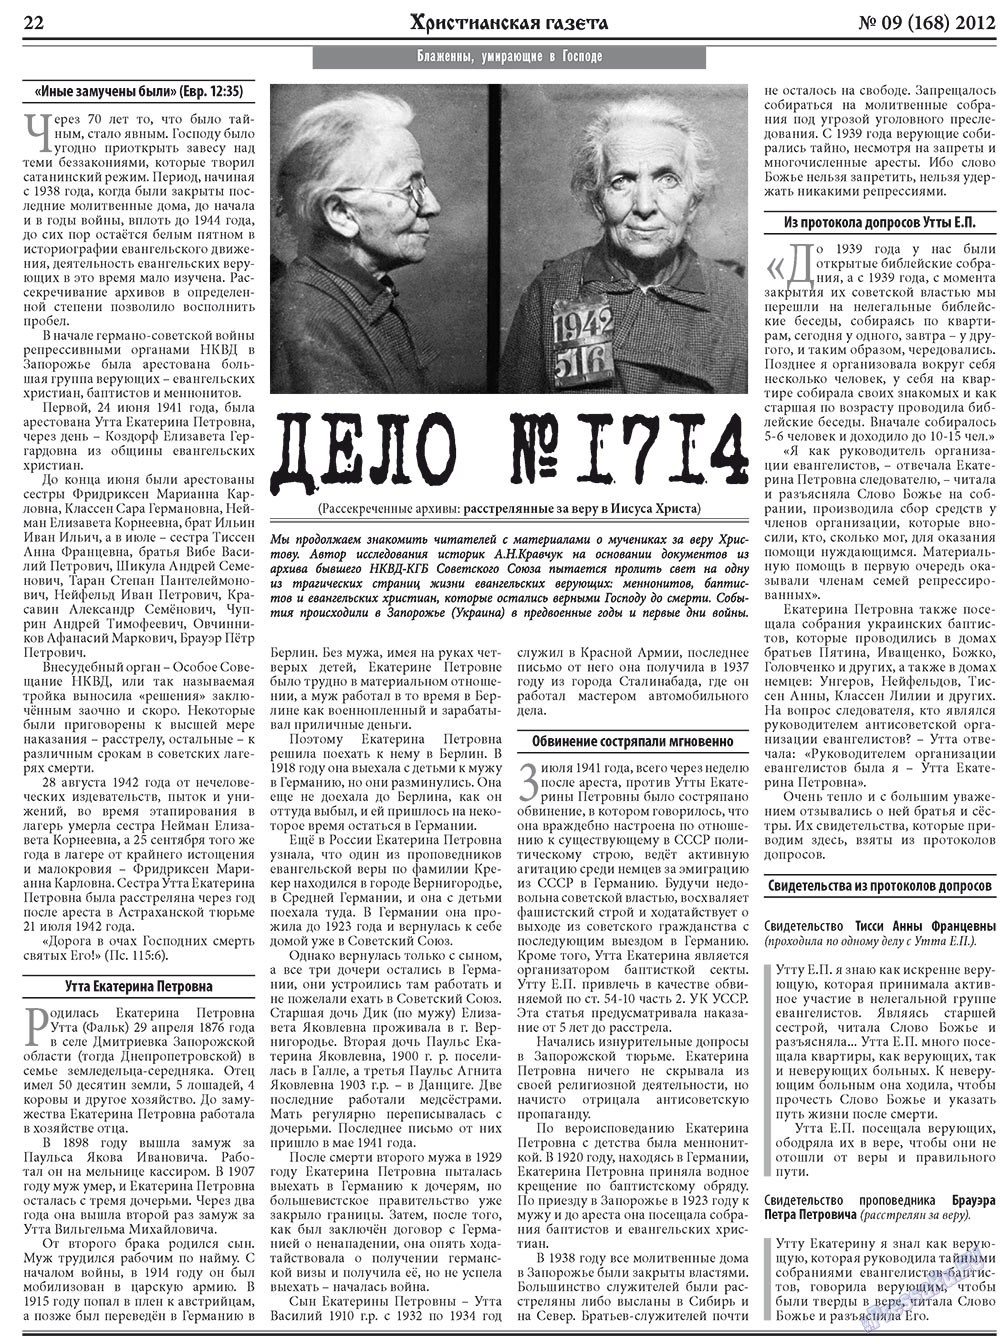 Христианская газета, газета. 2012 №9 стр.30